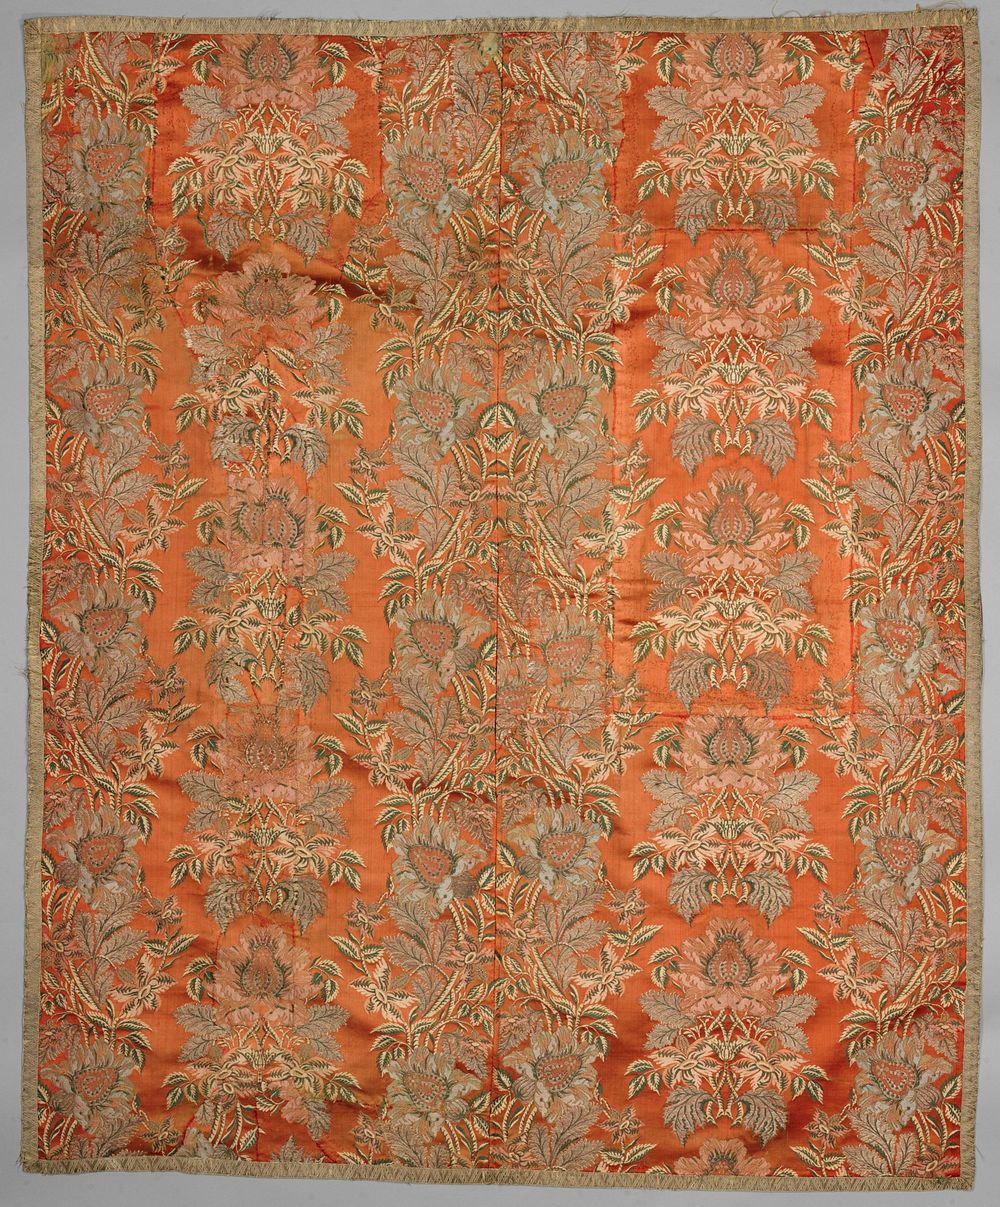 Zalmkleurige zijden kleed met een floraal patroon en metaaldraad (c. 1600 - c. 1799) by anonymous